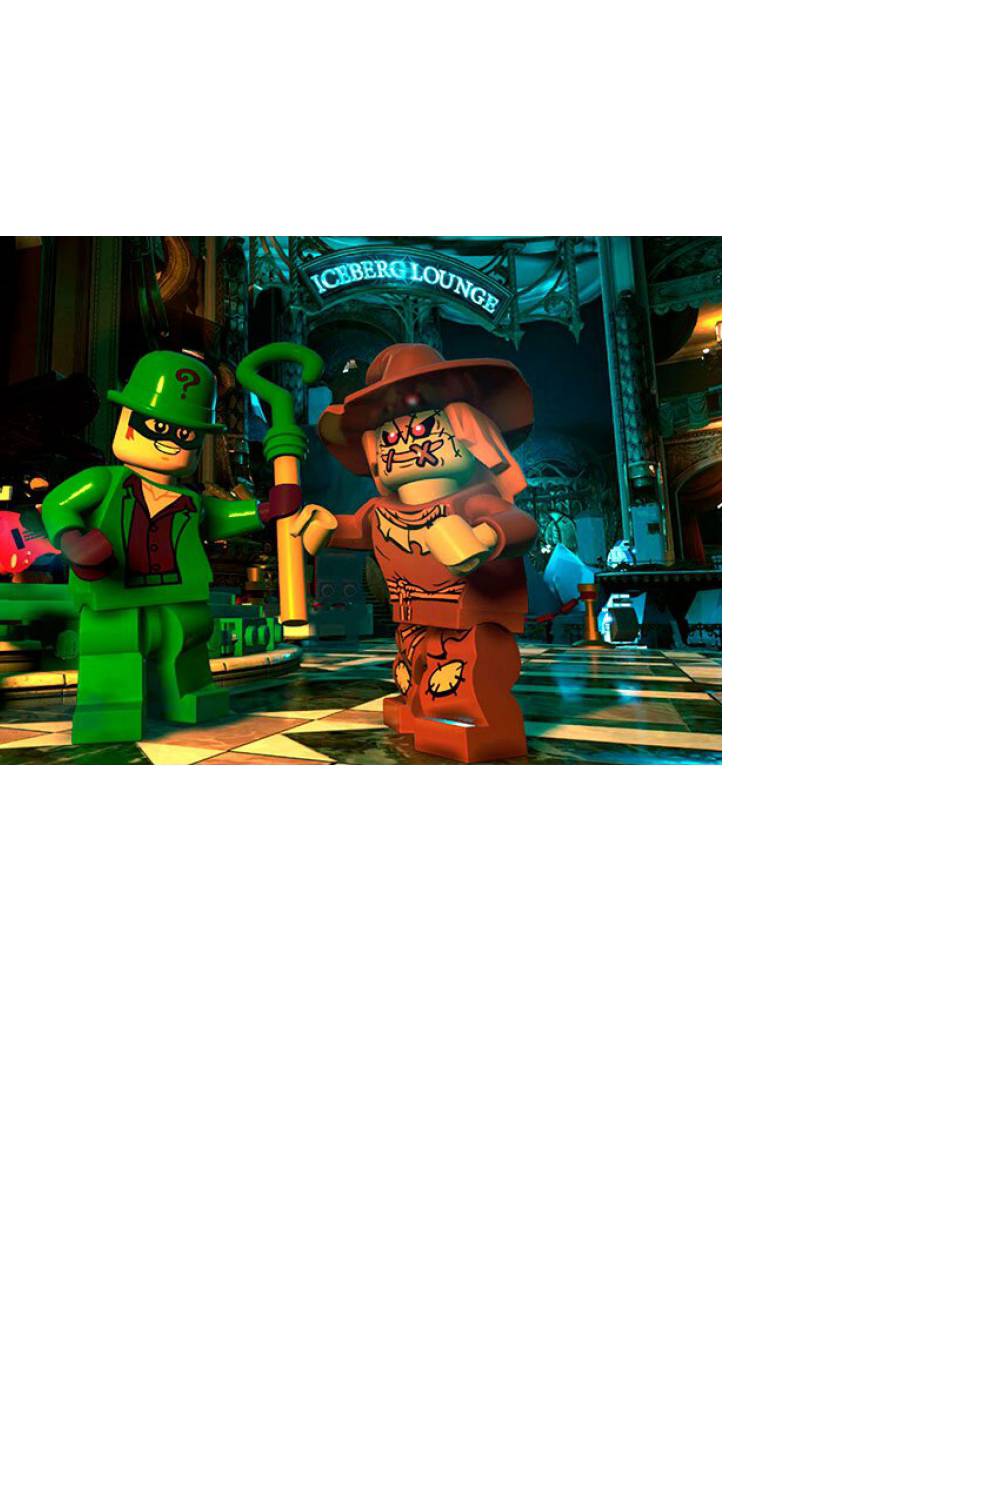 MALCREADO25584 - Lego Dc Super Villains Ps4